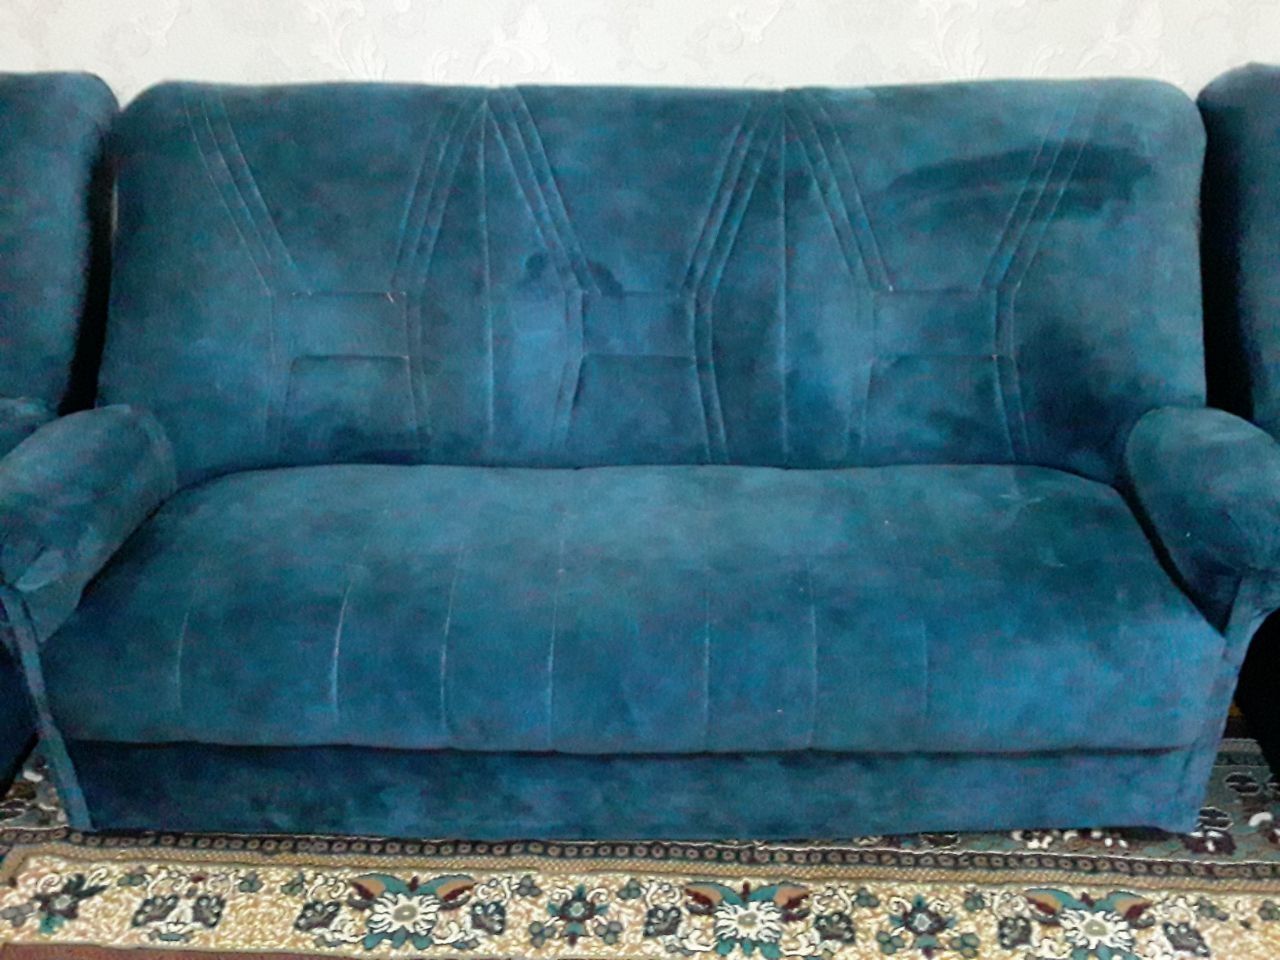 Мягкая мебель диван и два кресло